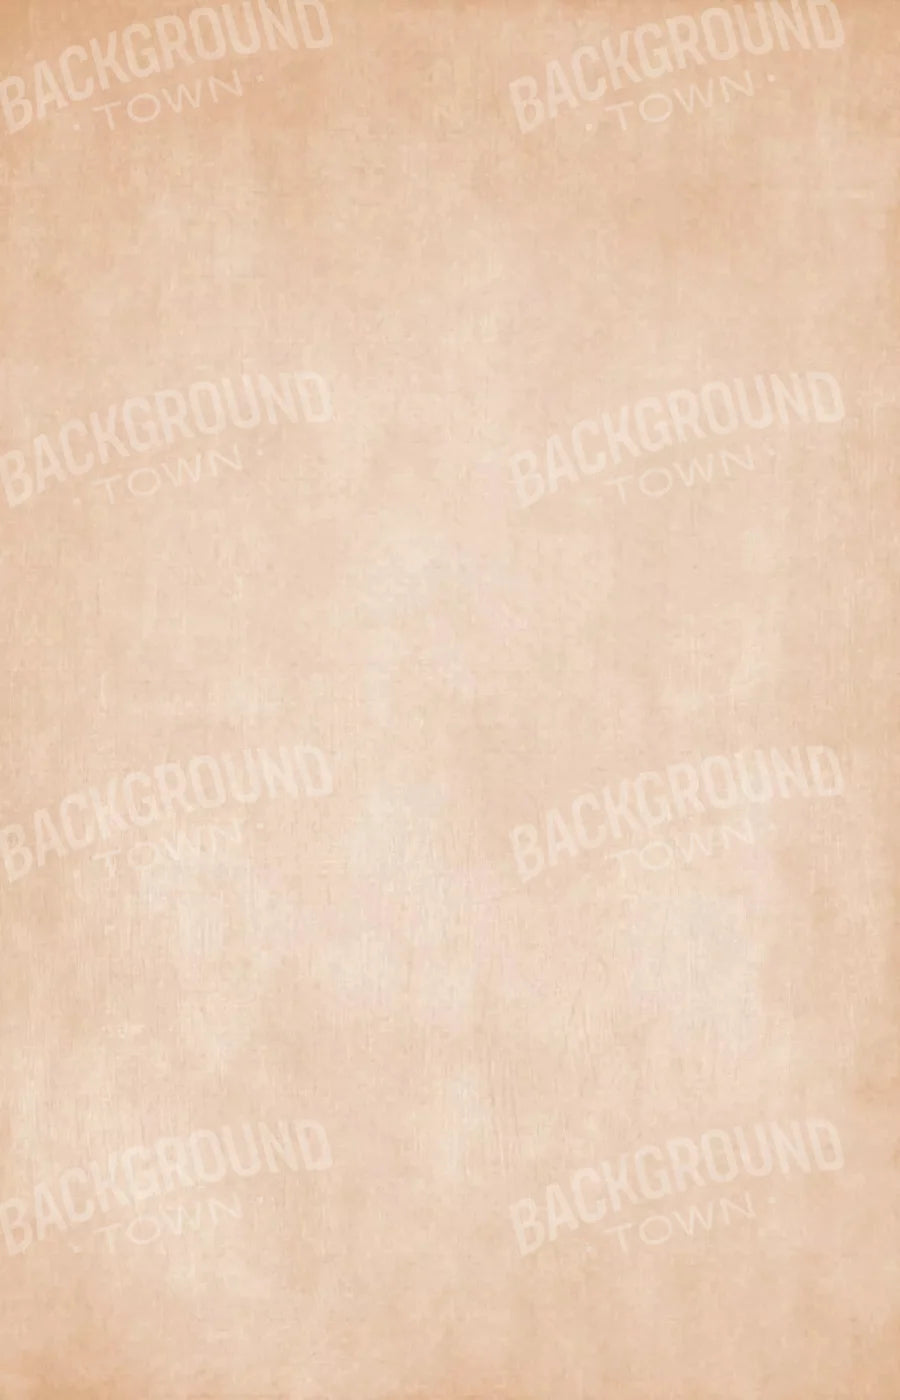 Daydream Peach 8X12 Ultracloth ( 96 X 144 Inch ) Backdrop